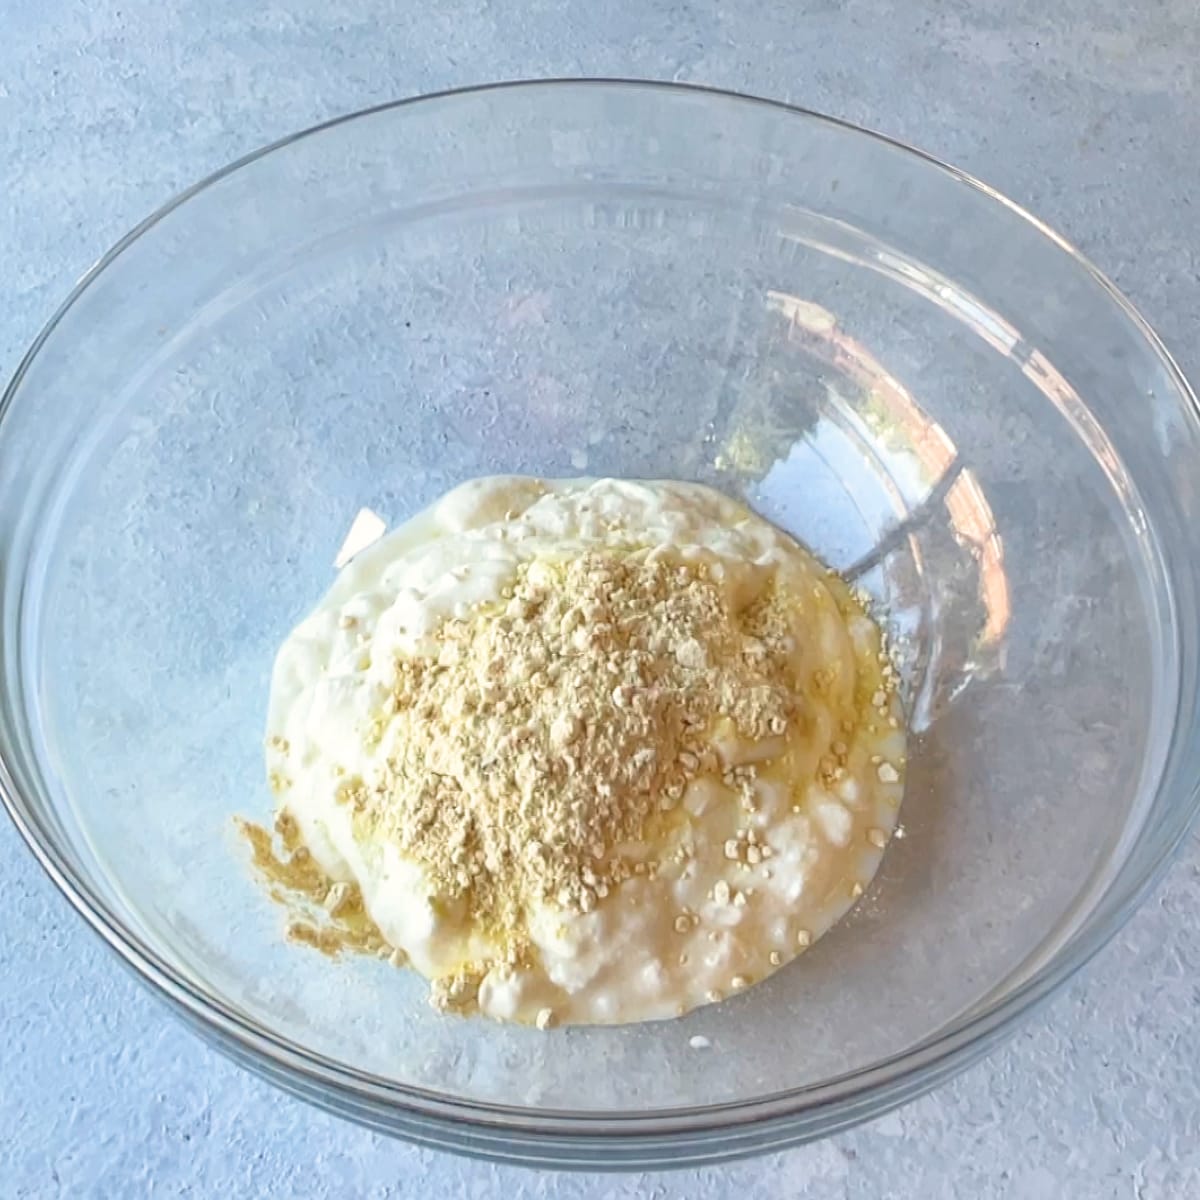 in glass bowl add Yogurt and Flour